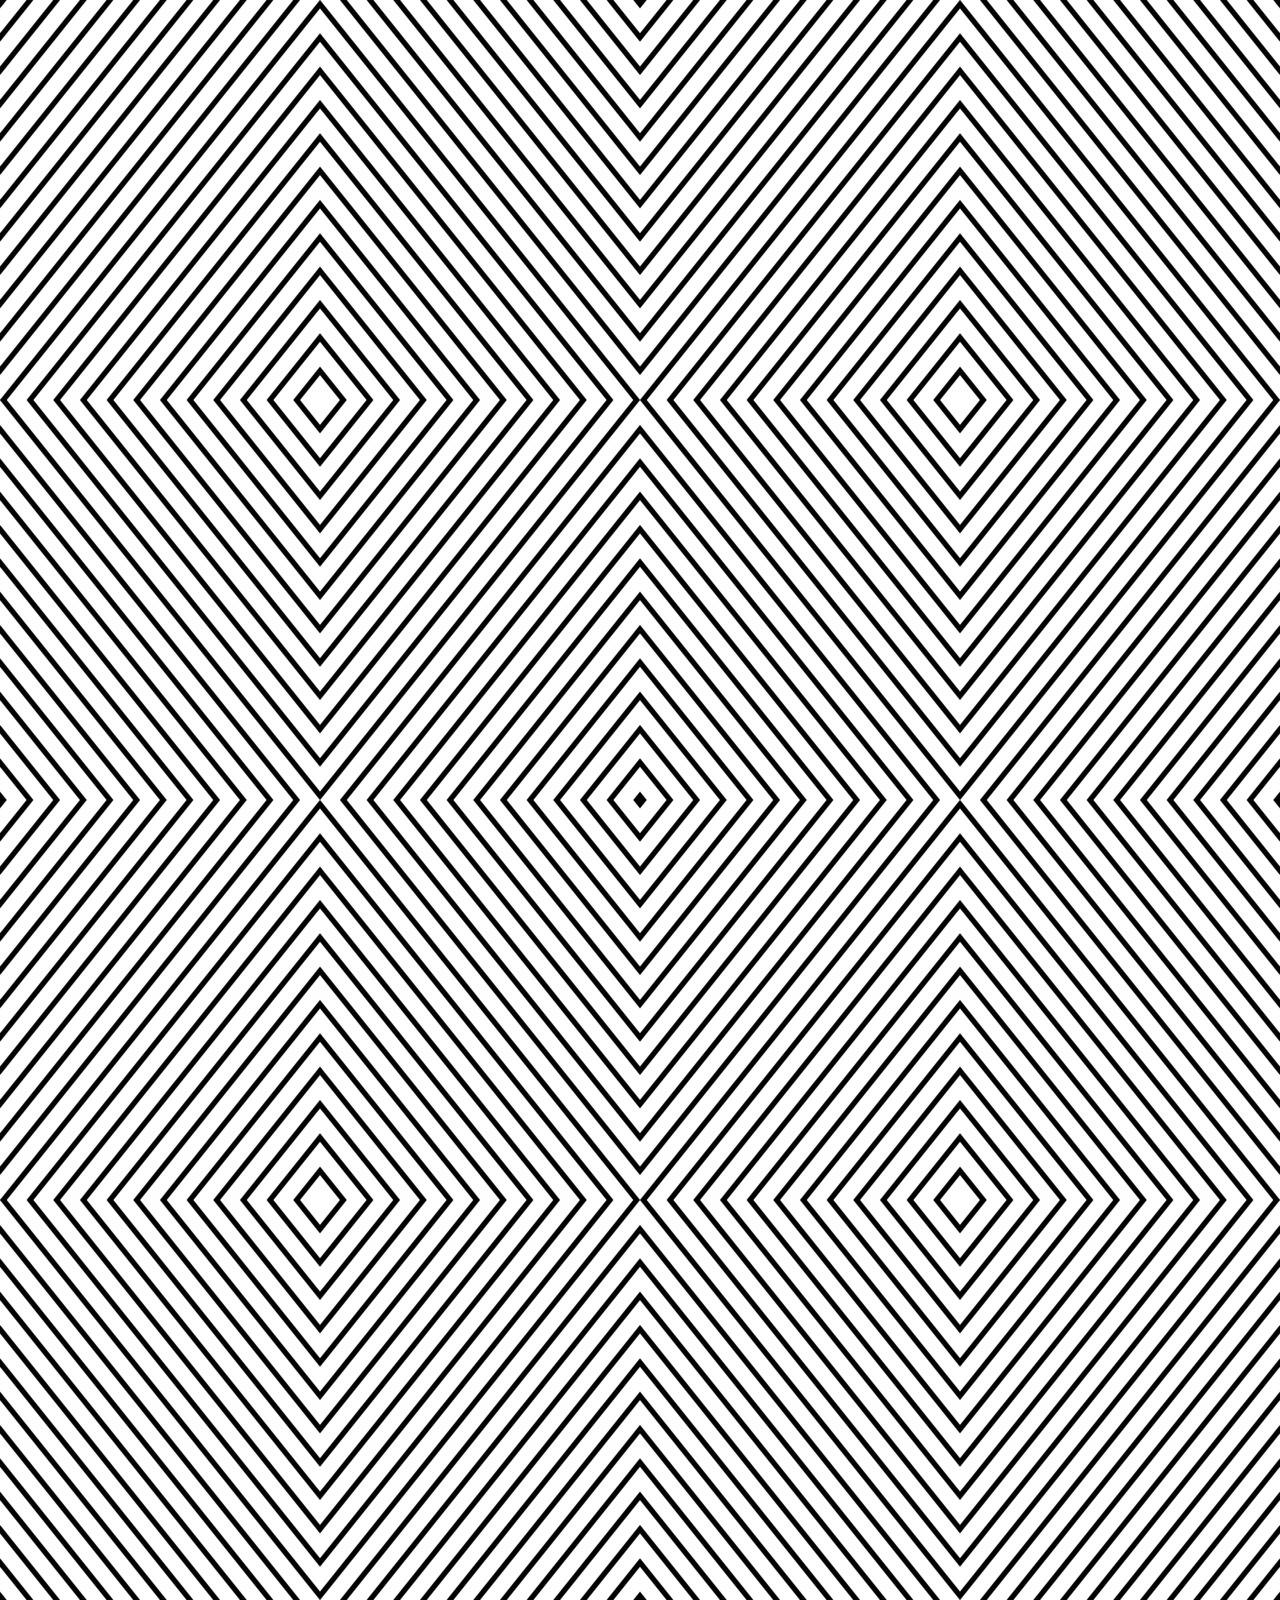 rhombus seamless pattern by ratkomat